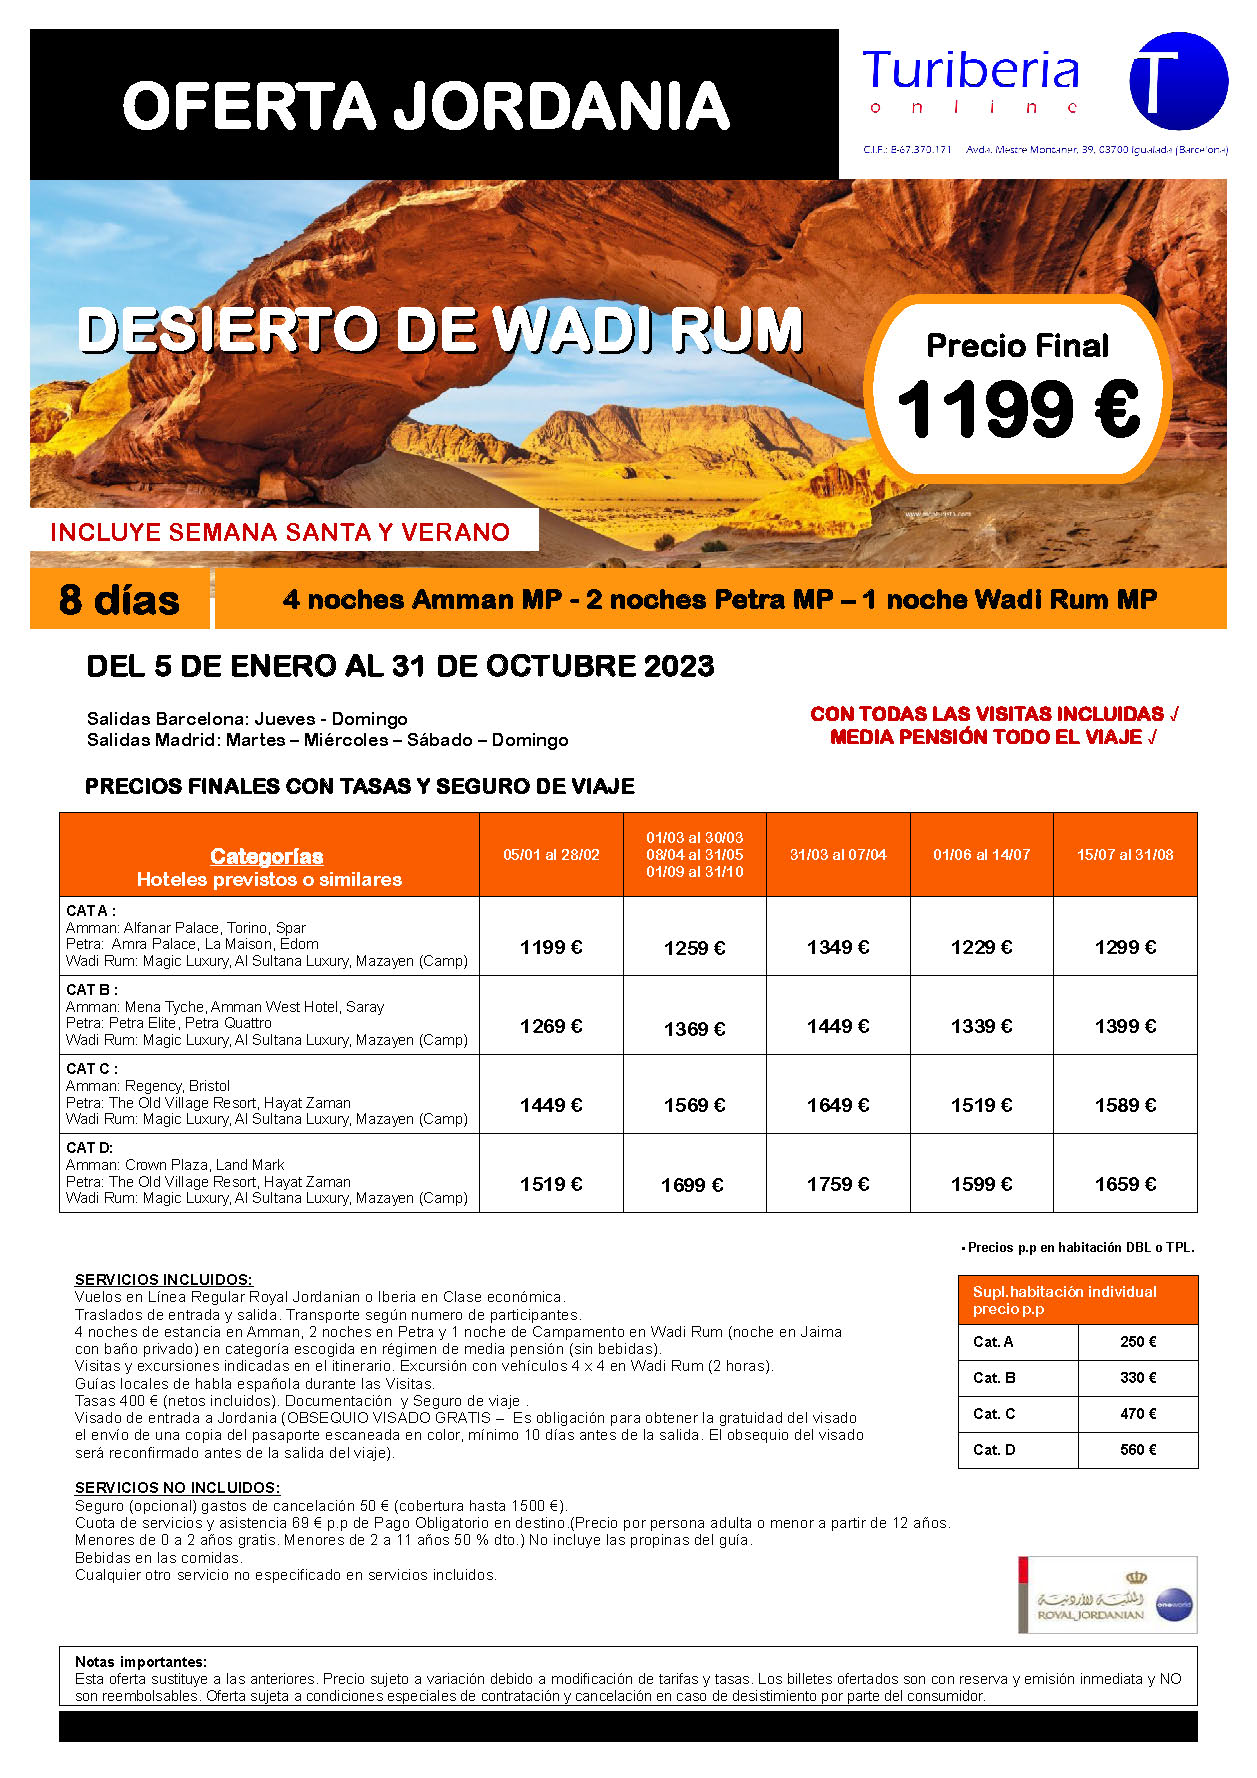 Ofertas Turiberia Jordania 2023 Desierto de Wadi Rum 8 dias salida en vuelo directo desde Barcelona y Madrid